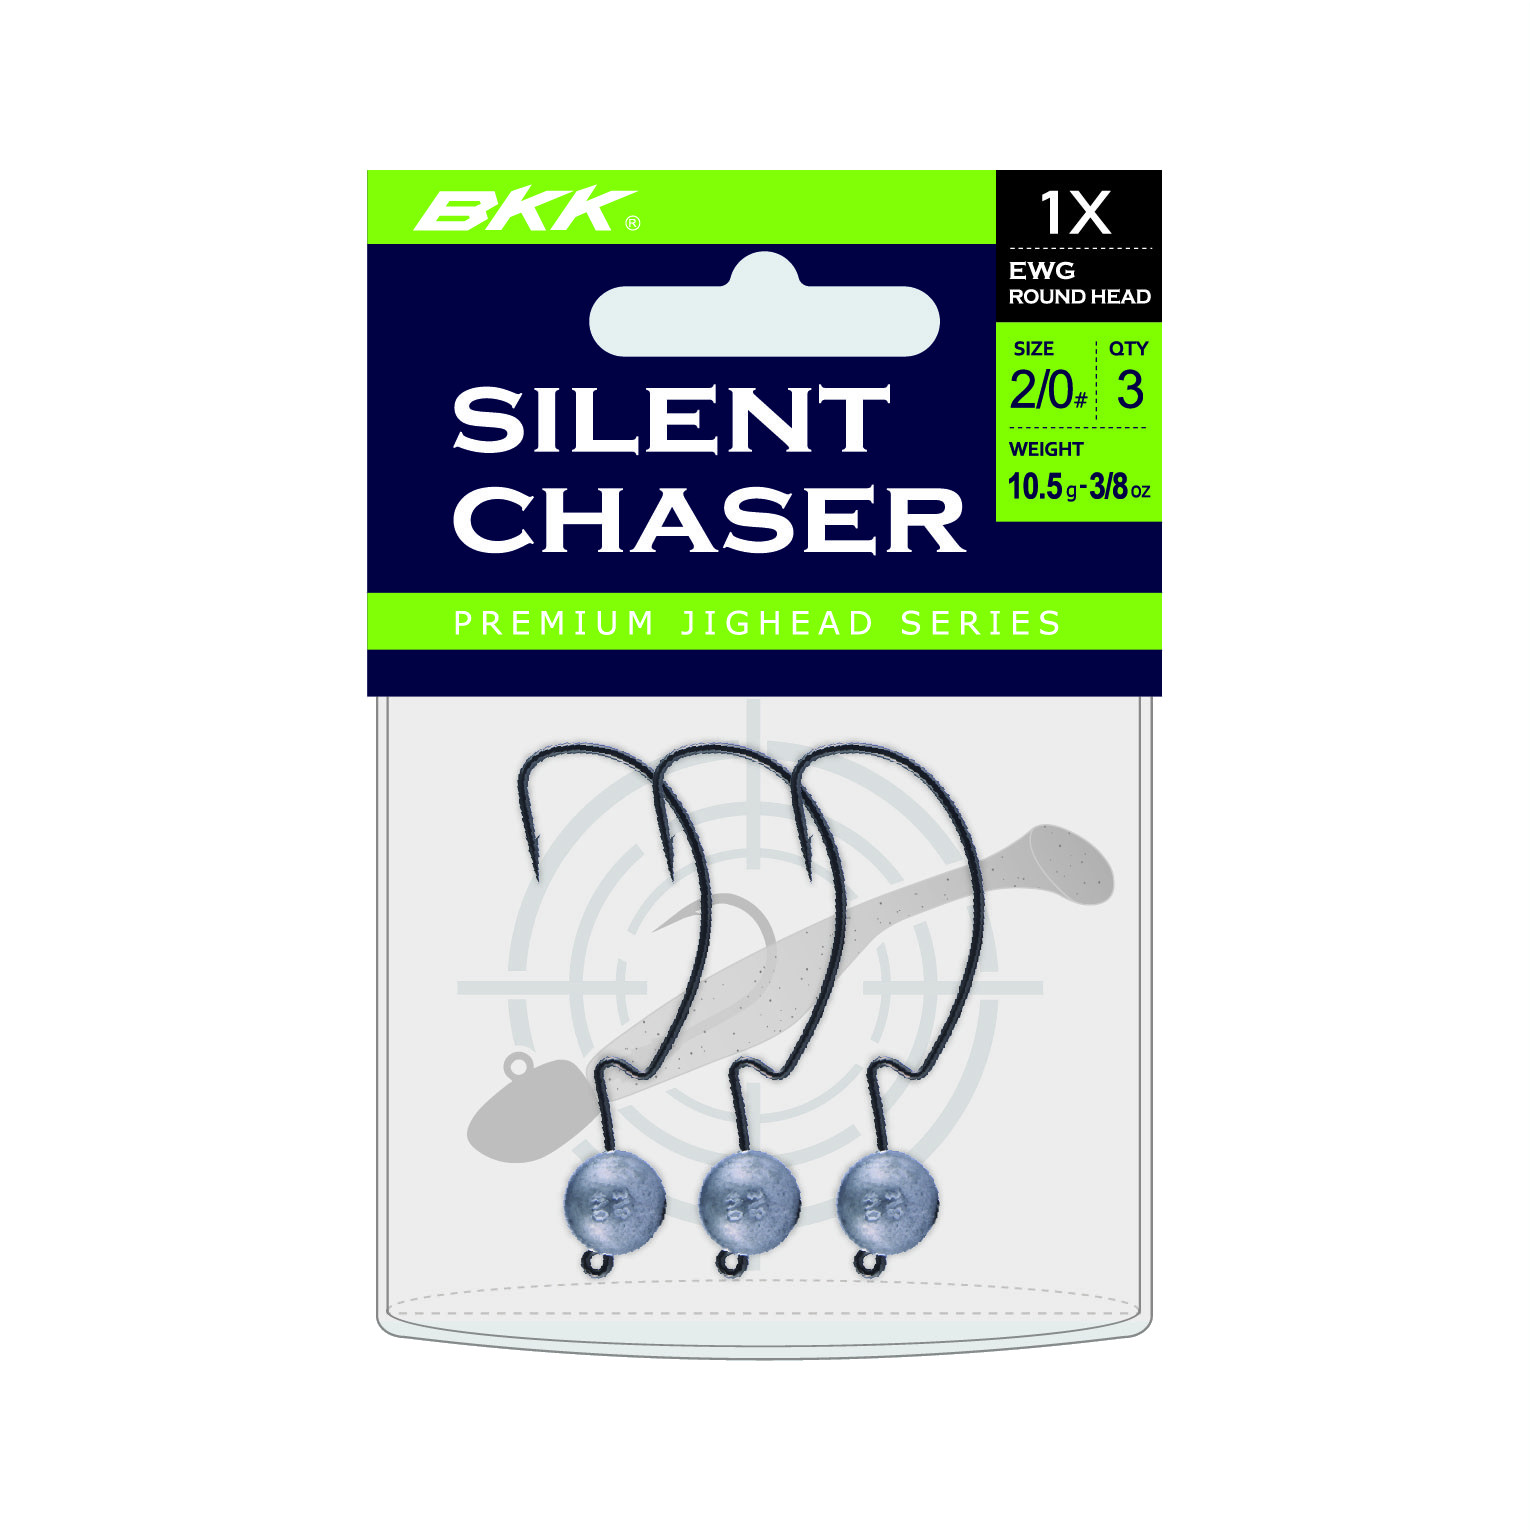 BKK Silent Chaser 1X EWG Round Head Bleikopf #4/0